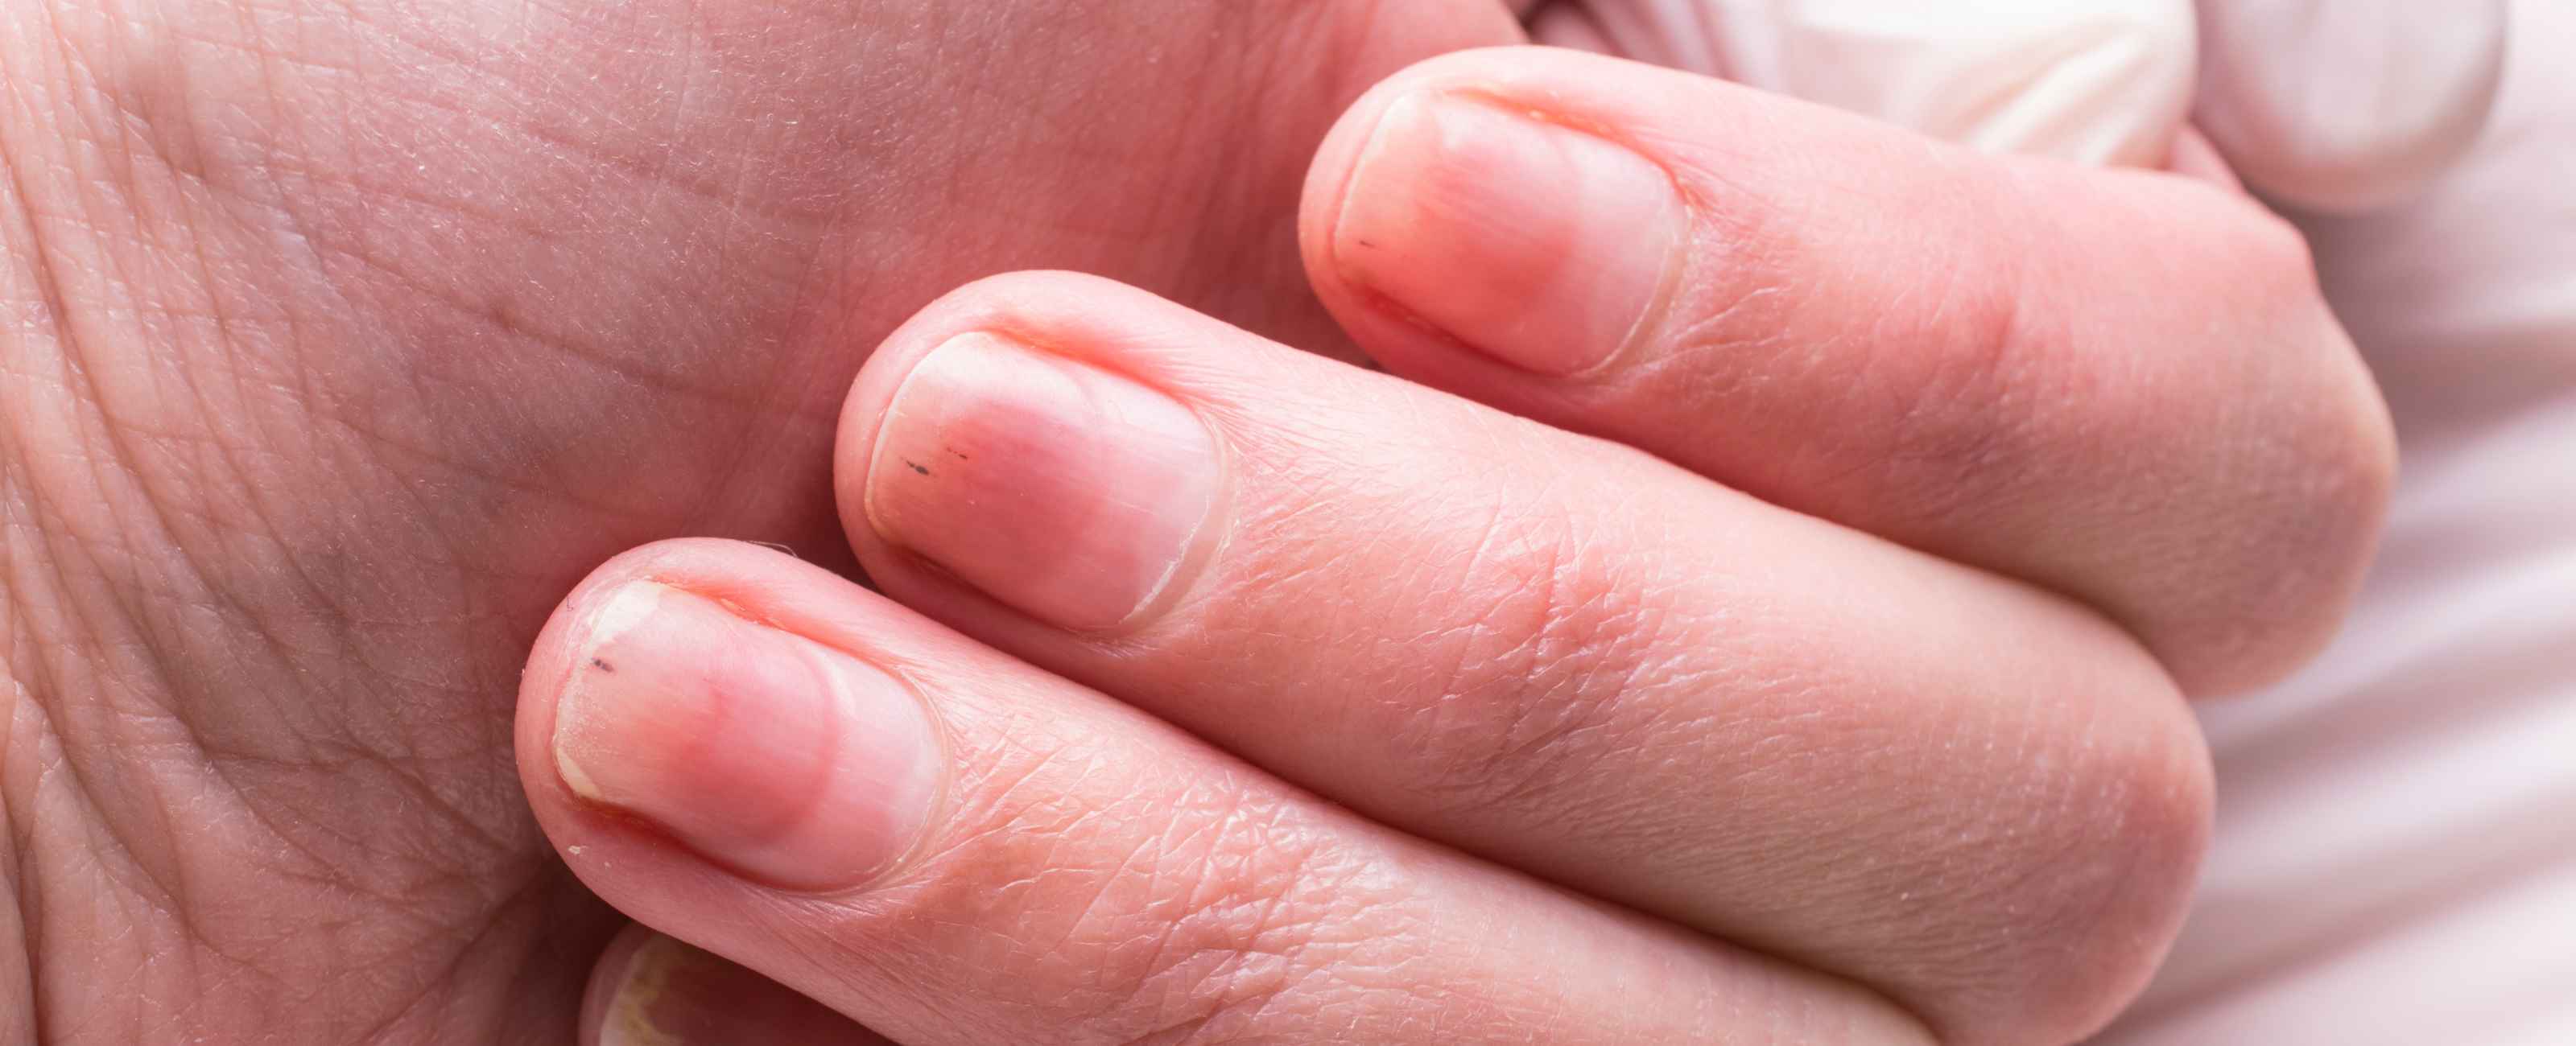 Mycose des ongles : comment s'en débarrasser pour toujours et naturellement